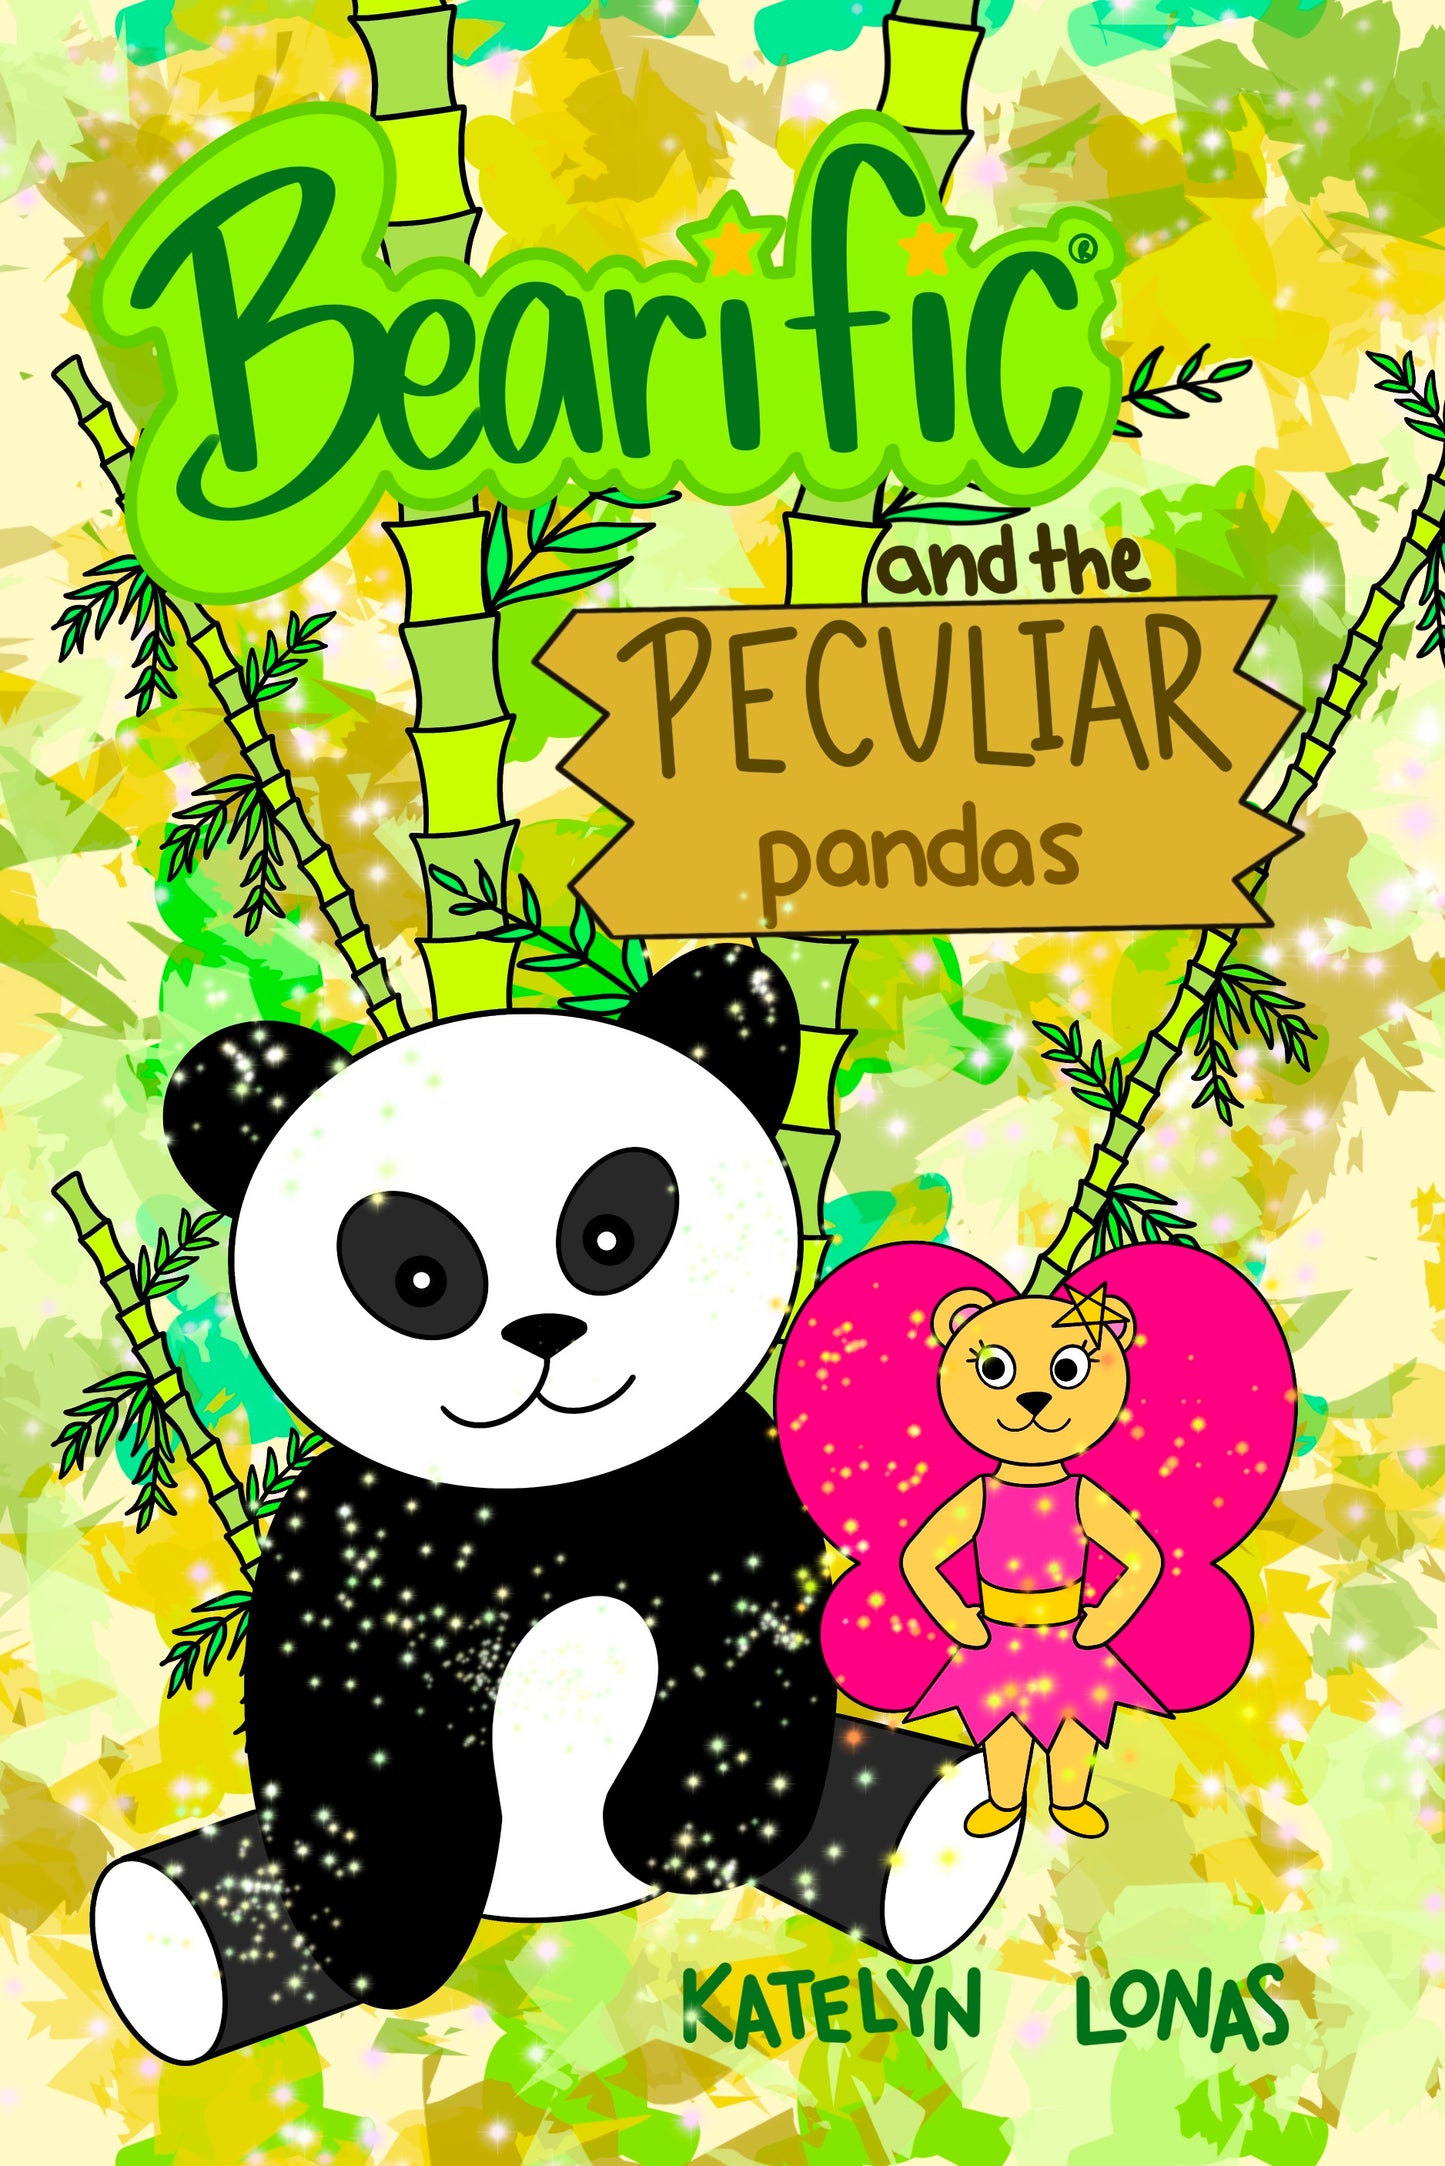 Bearific® and the Peculiar Pandas